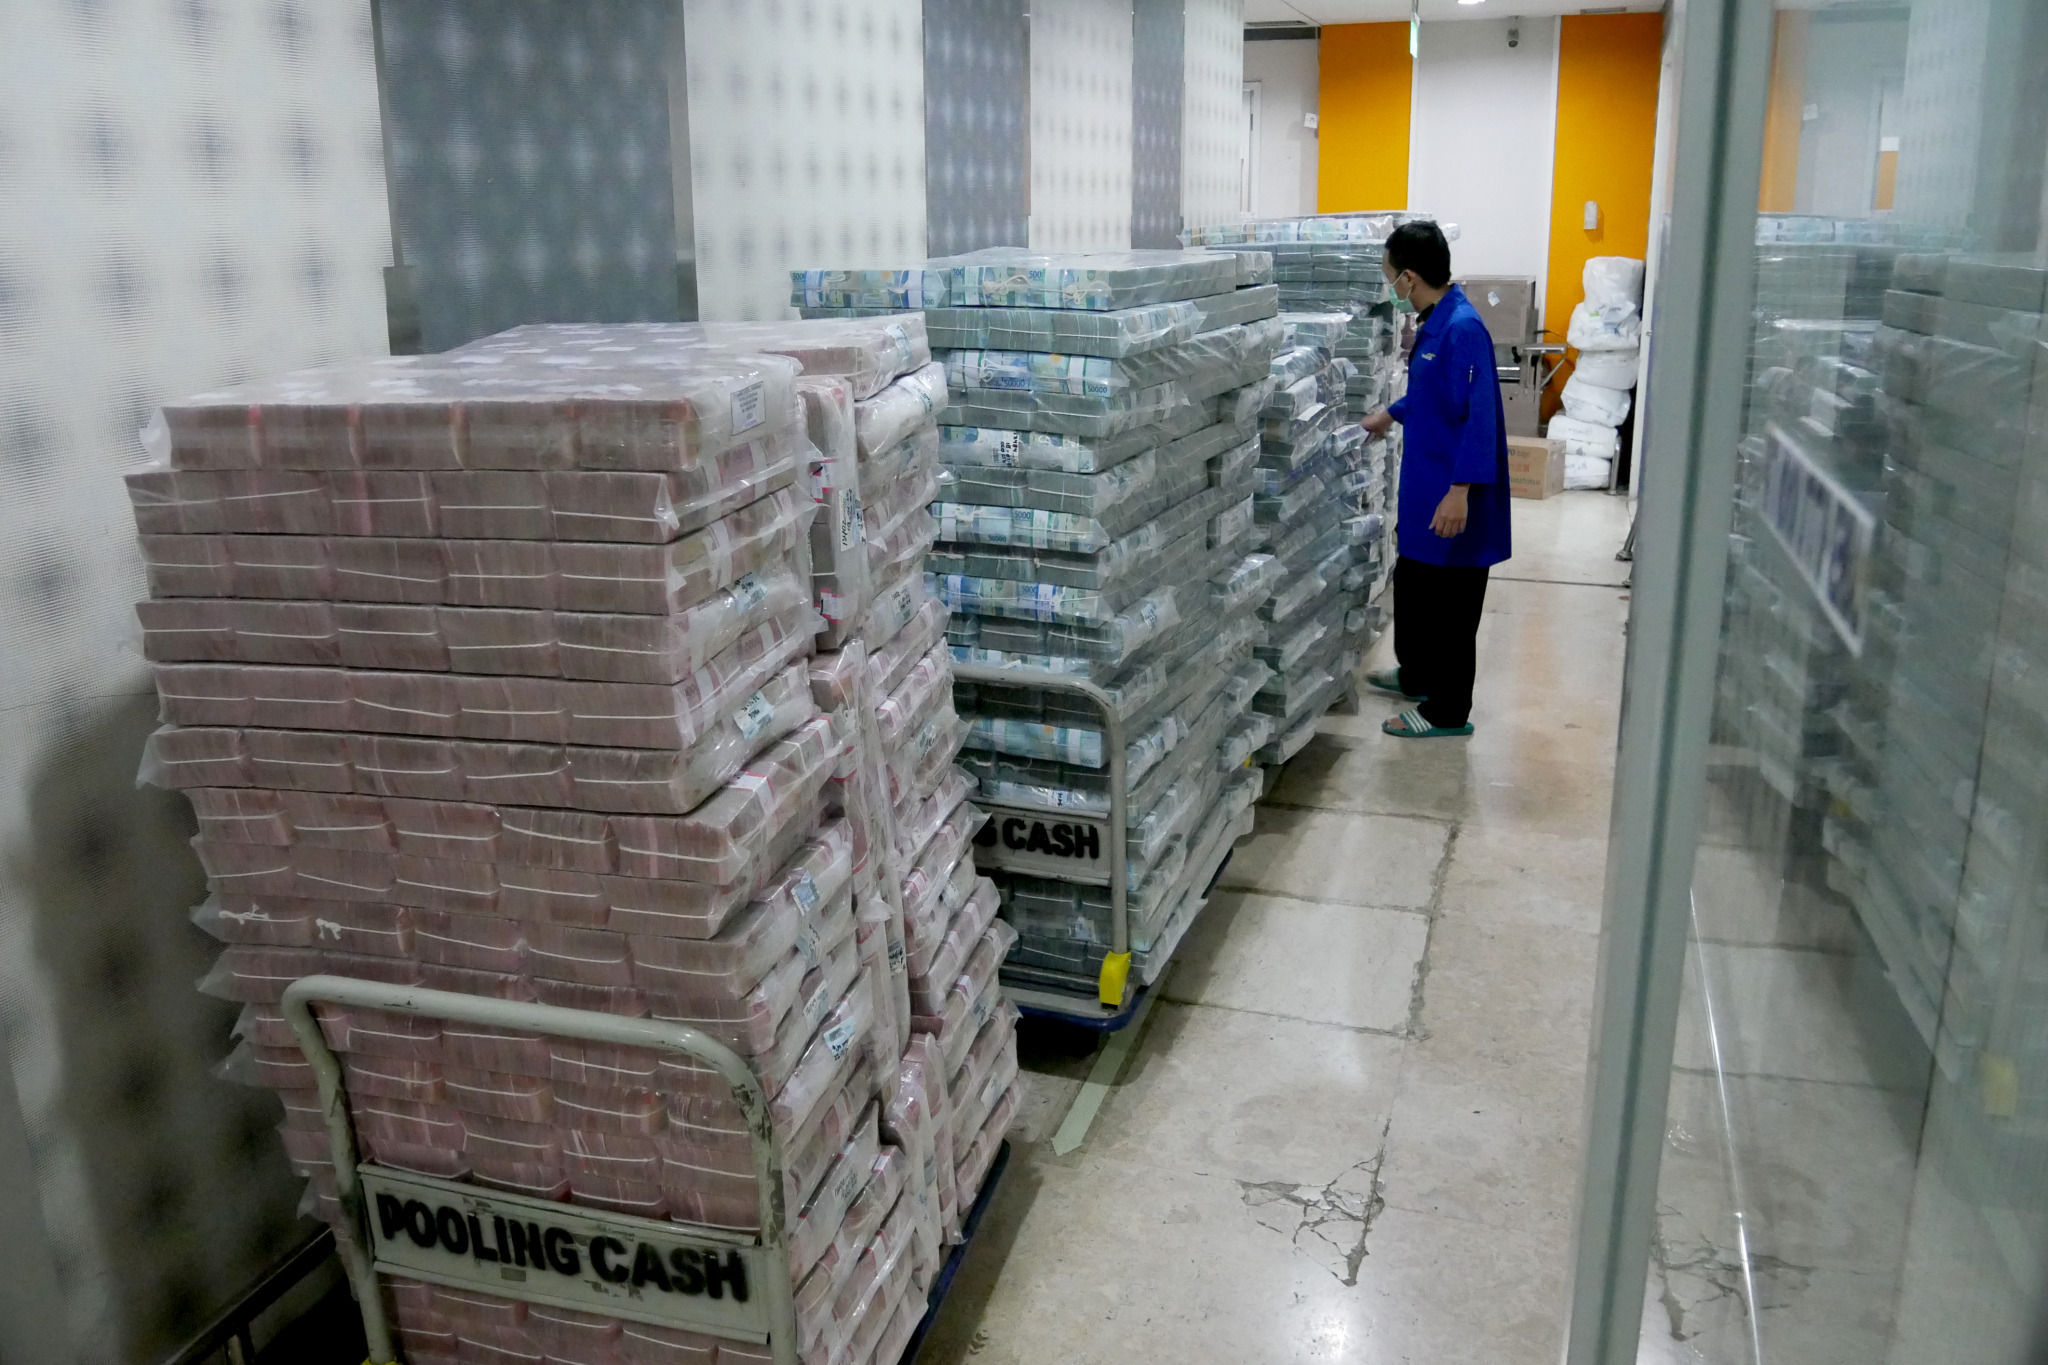 Karyawan memindahkan tumpukan uang rupiah di cash pooling Bank Mandiri, Jakarta, Jum'at, 21 Januari 2022. Foto: Ismail Pohan/TrenAsia